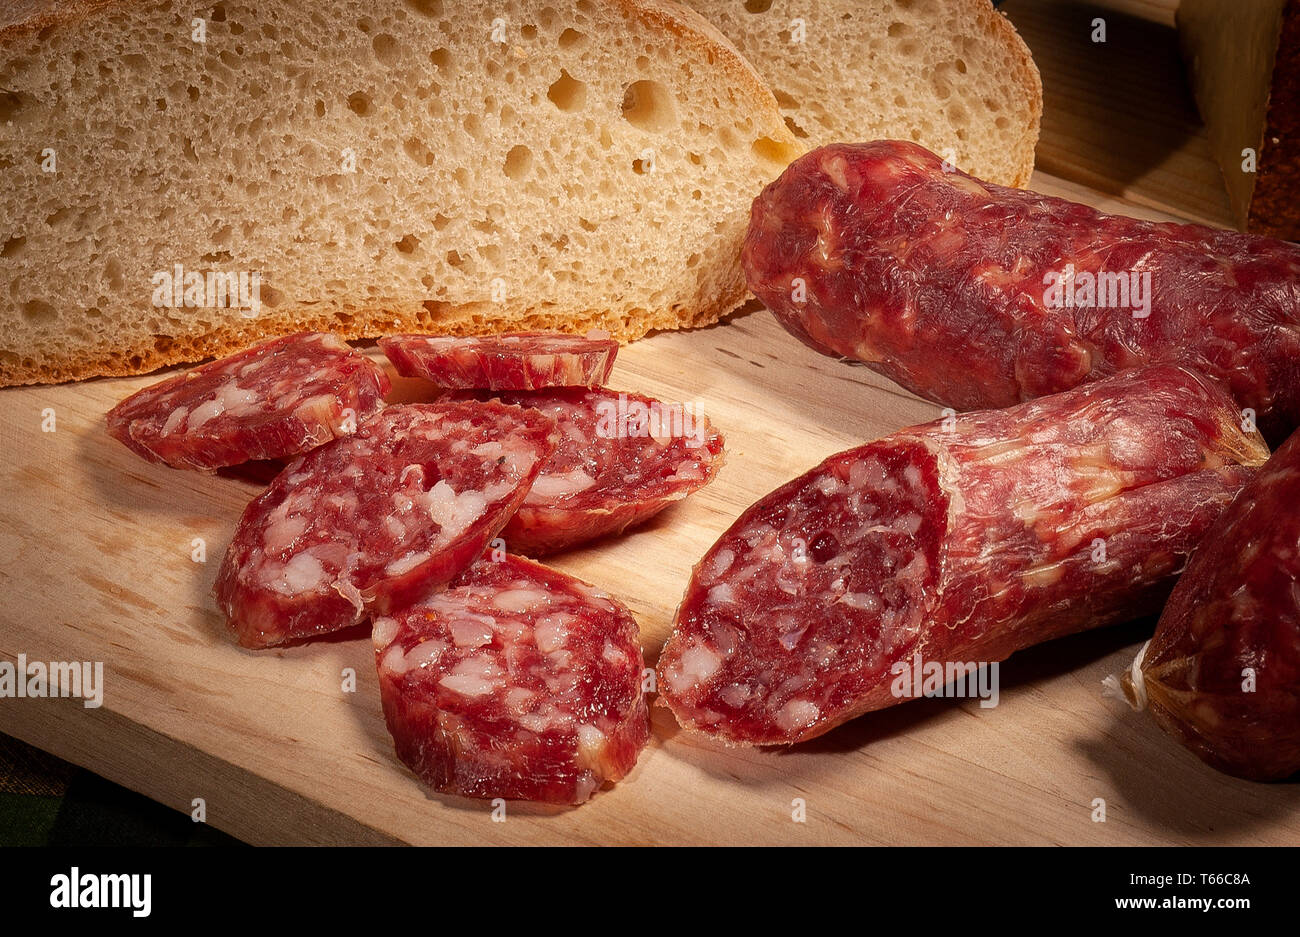 Italy Tuscany Tuscan “cacciatorino” salami Stock Photo